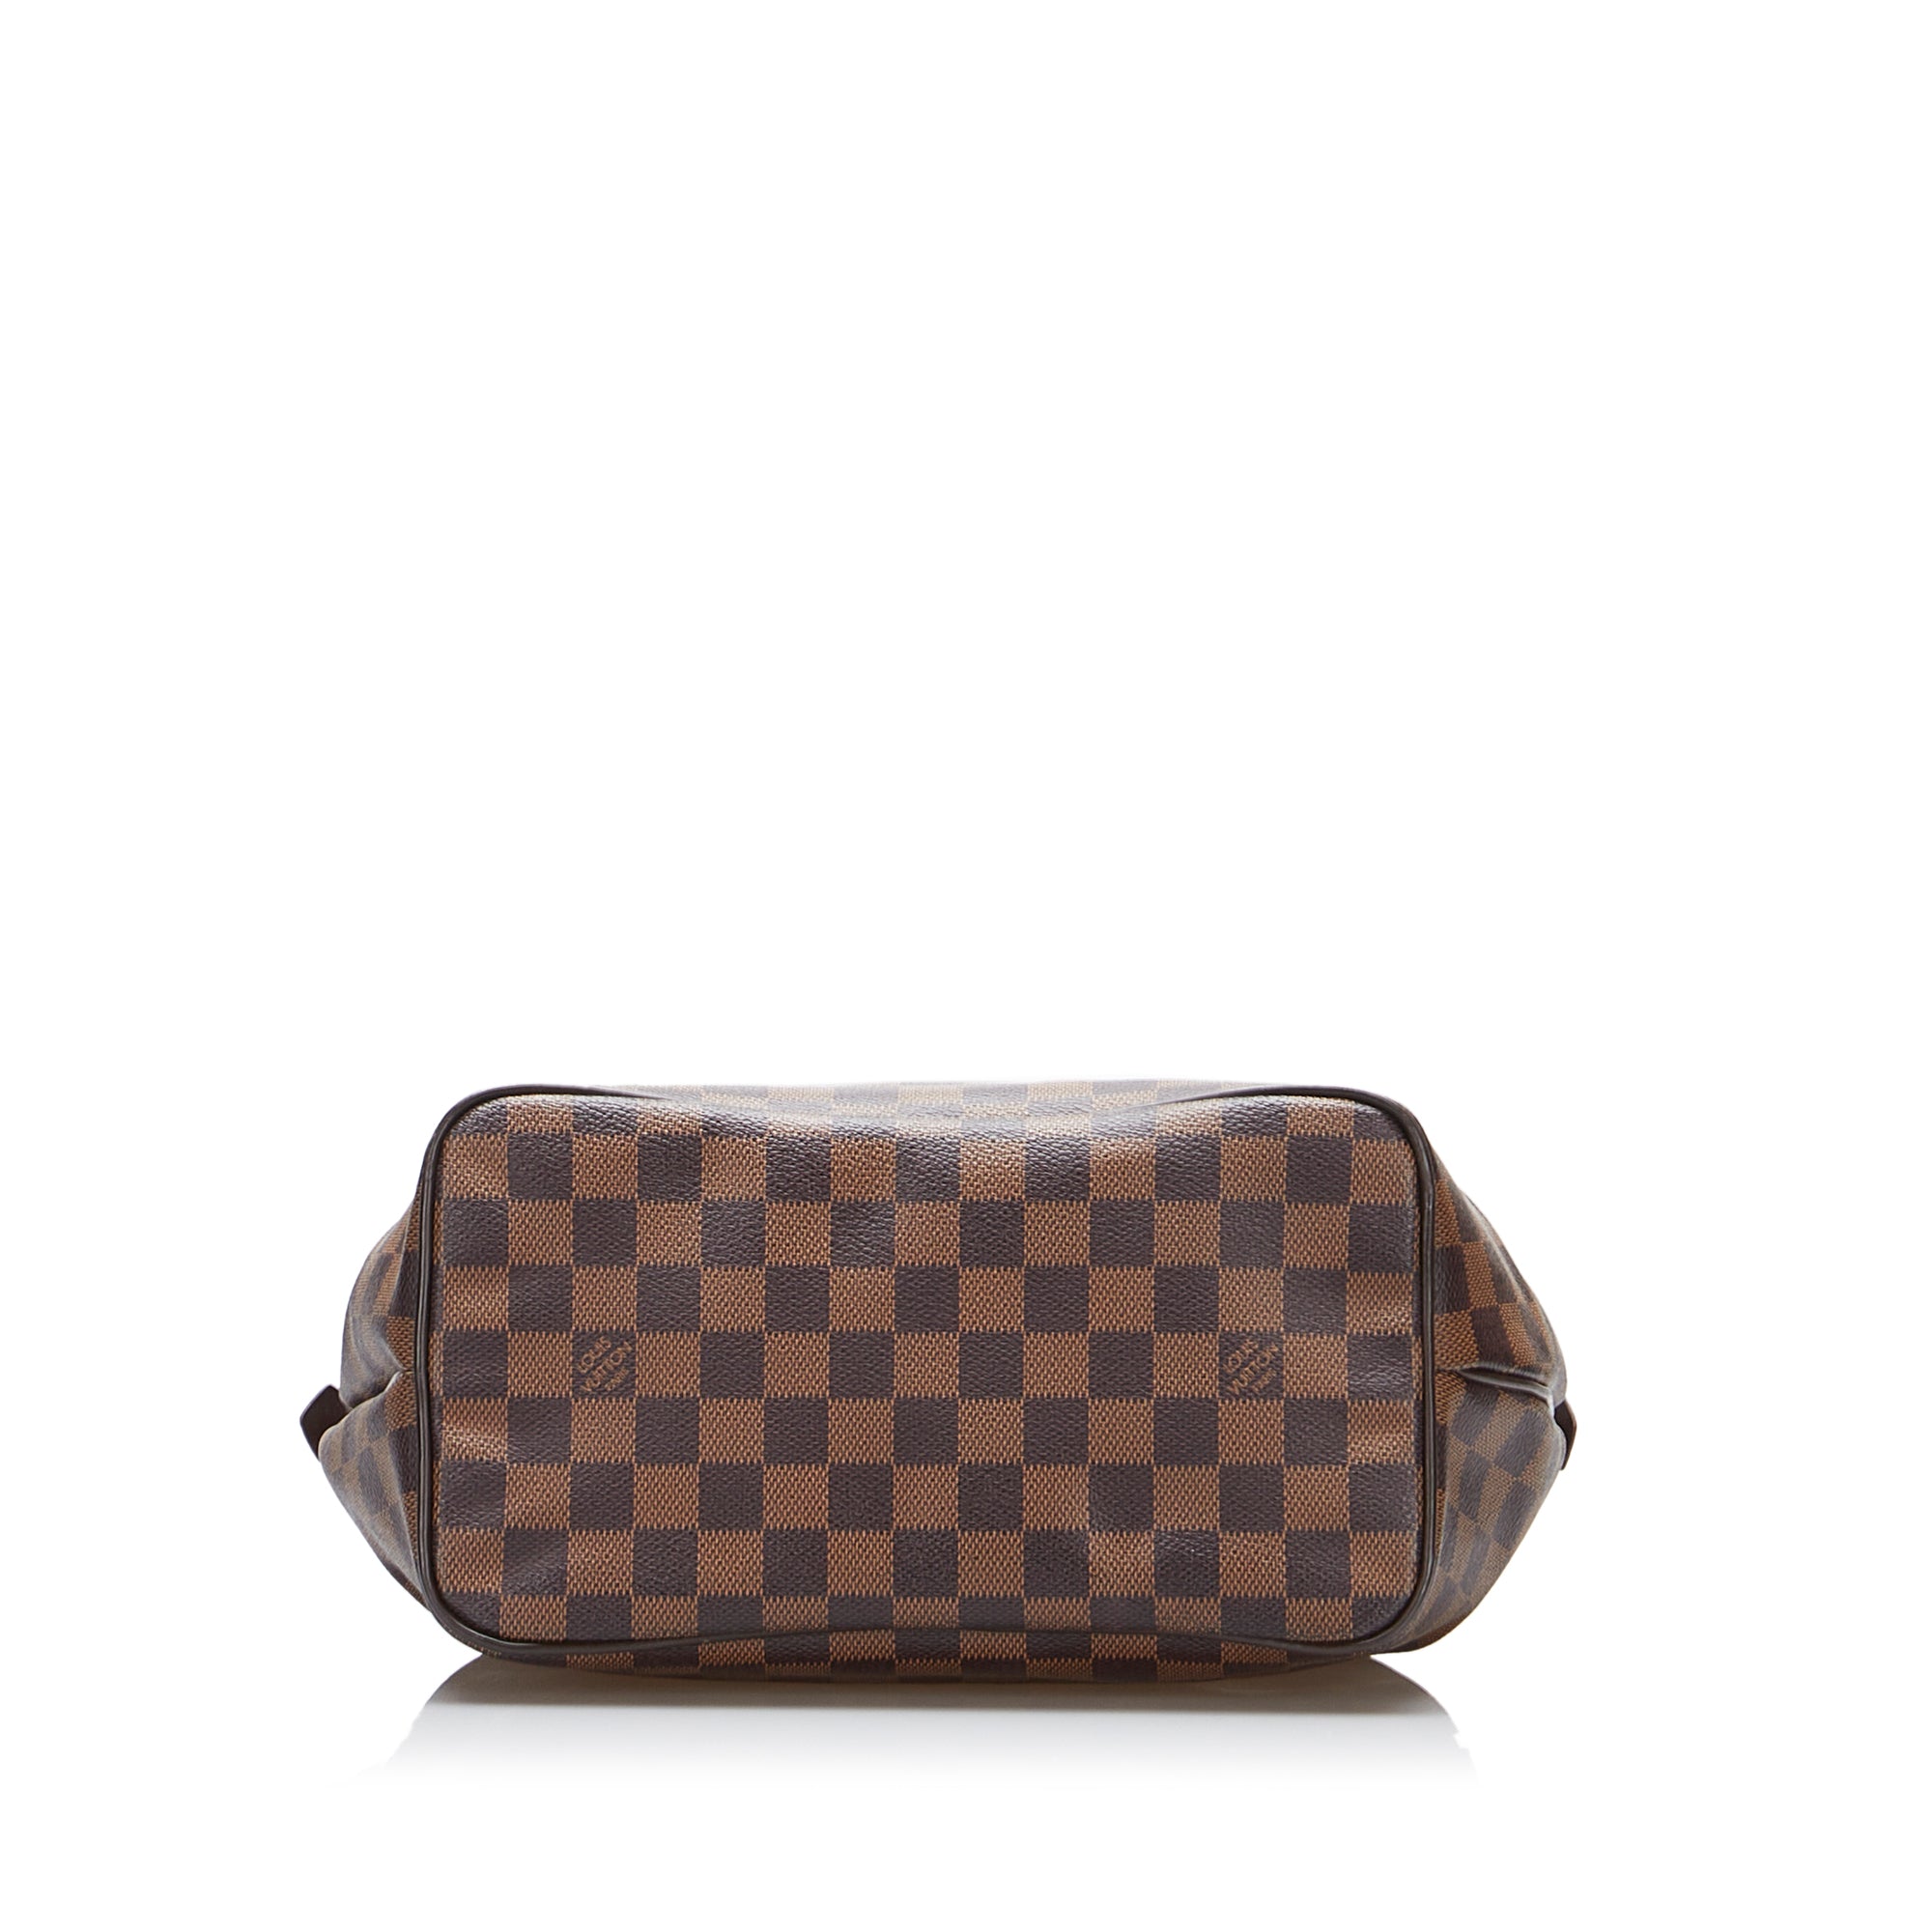 Louis Vuitton Westminster Handbag Damier PM - ShopStyle Satchels